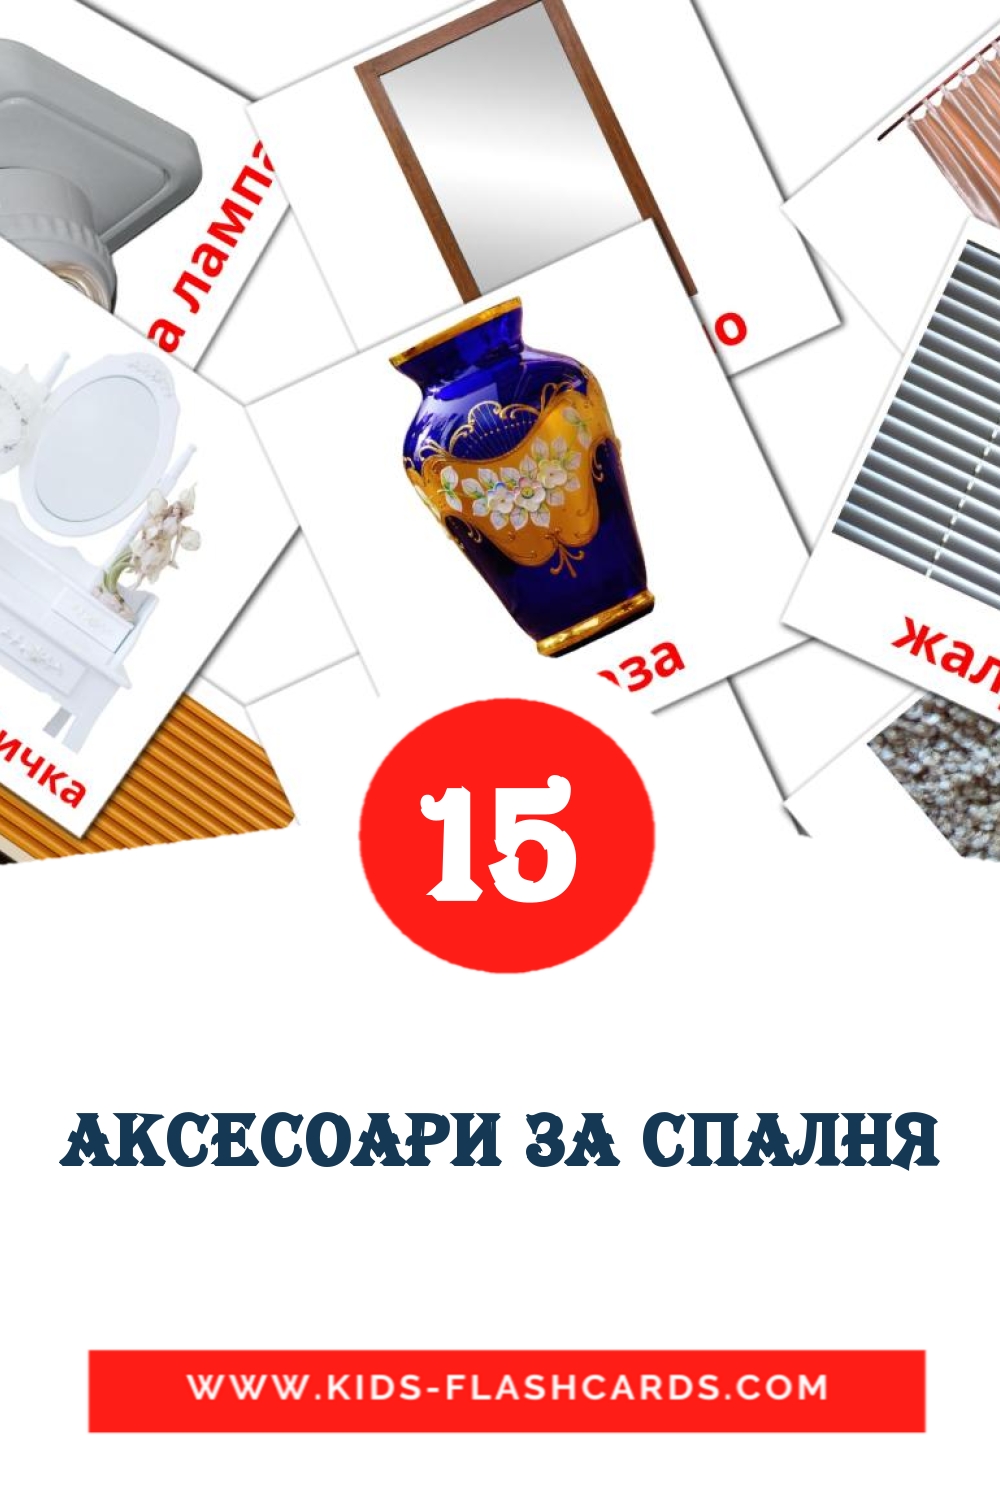 18 cartes illustrées de аксесоари за спалня pour la maternelle en bulgare